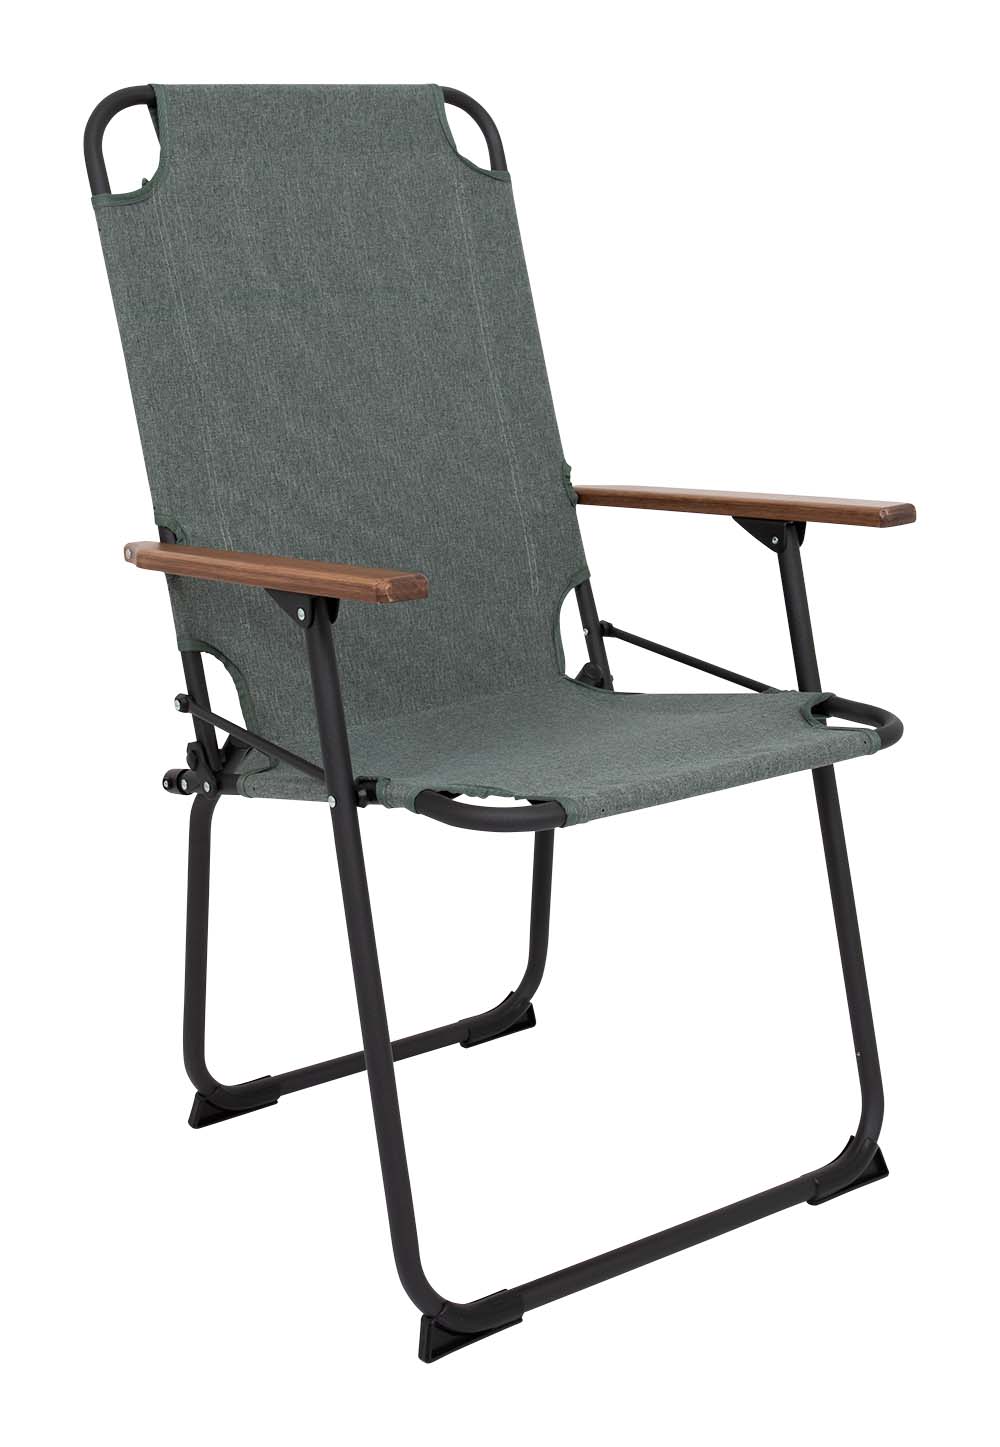 1211893 "Een extra hoge en brede comfortabele klapstoel. Een klassieke en zeer compacte klapstoel met een moderne industriële uitstraling. Een stoel waarbij stijl, comfort en functionaliteit worden gecombineerd. Voorzien van een Cationic bekleding, een lichtgewicht aluminium frame en bamboe armleggers. Een ideale stoel voor in de tuin of op de camping, maar ook op het balkon en in de woonkamer. Daarnaast is deze stoel voorzien van extra stabilisatoren en een 'safety-lock' tegen ongewenst inklappen. Compact mee te nemen."